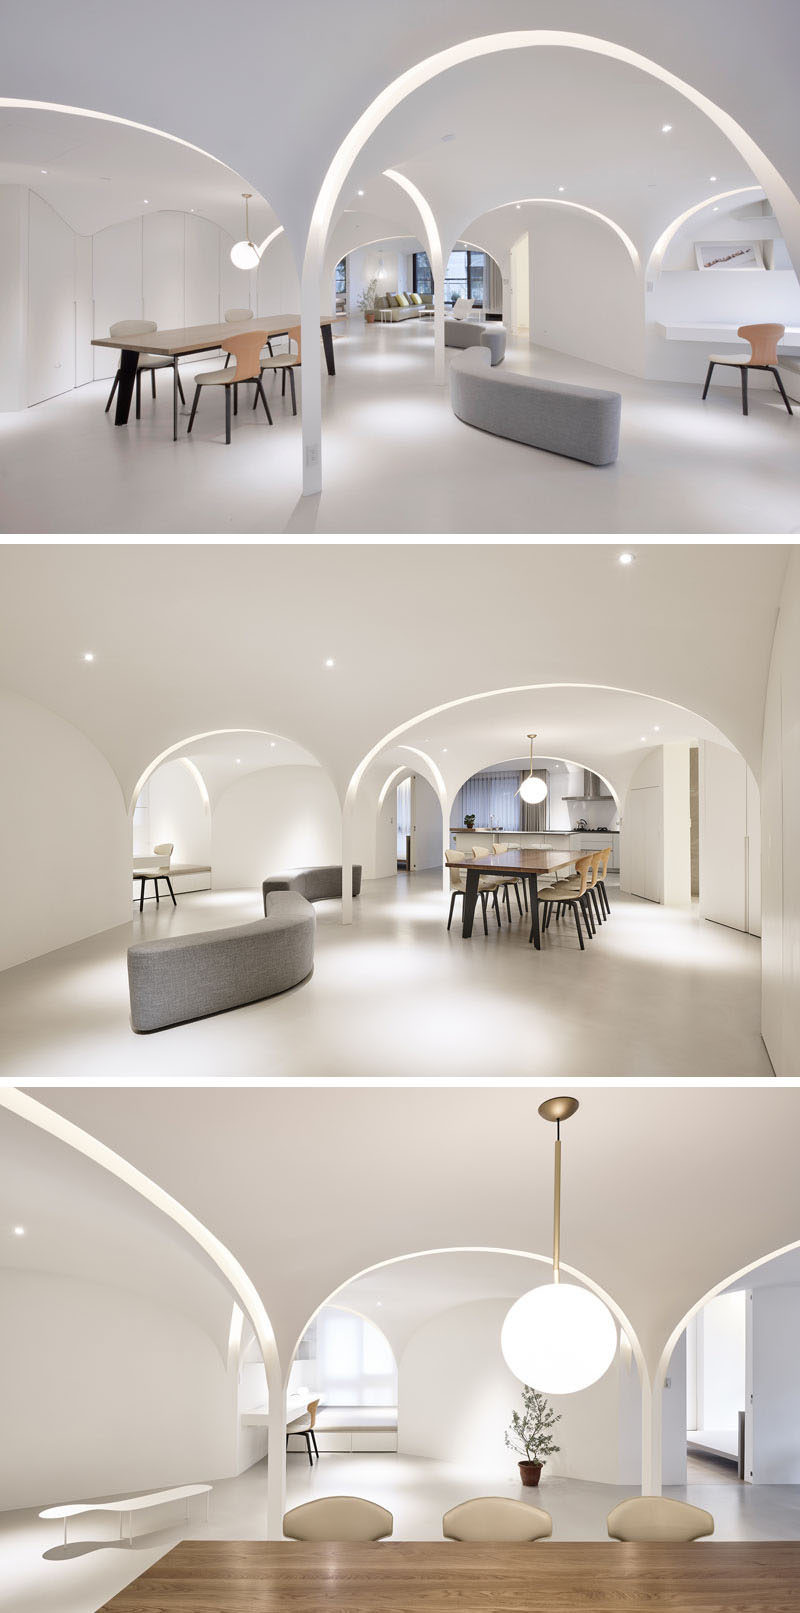 light-filled-archways-interior-design-040418-128-02-800x1613